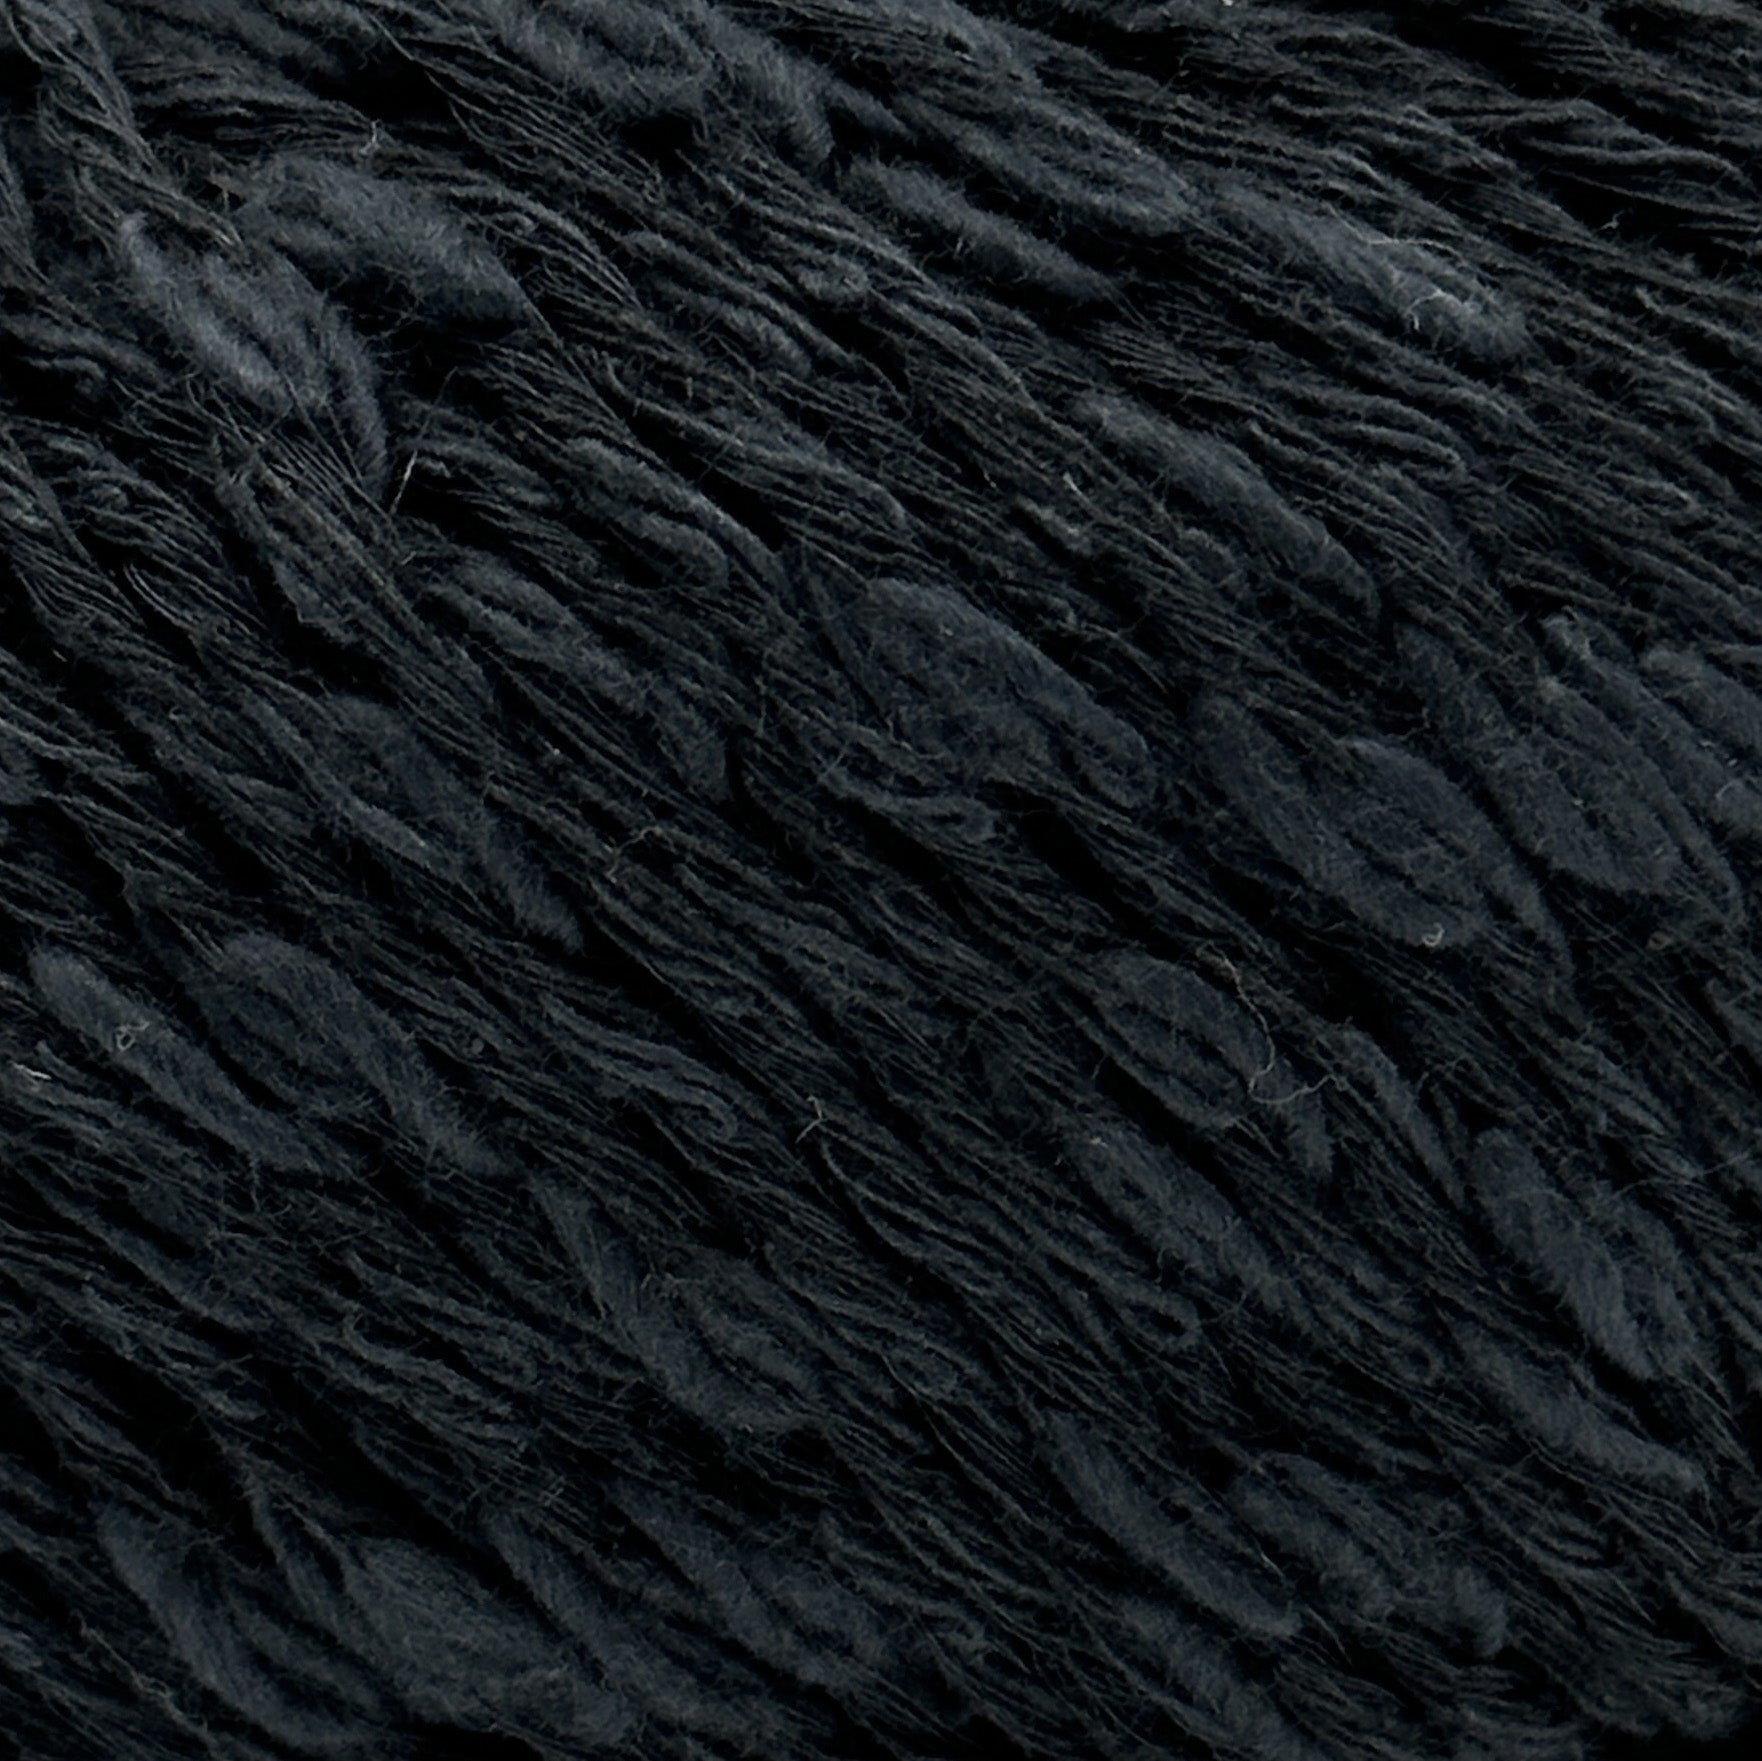 CottonWaves black [599]